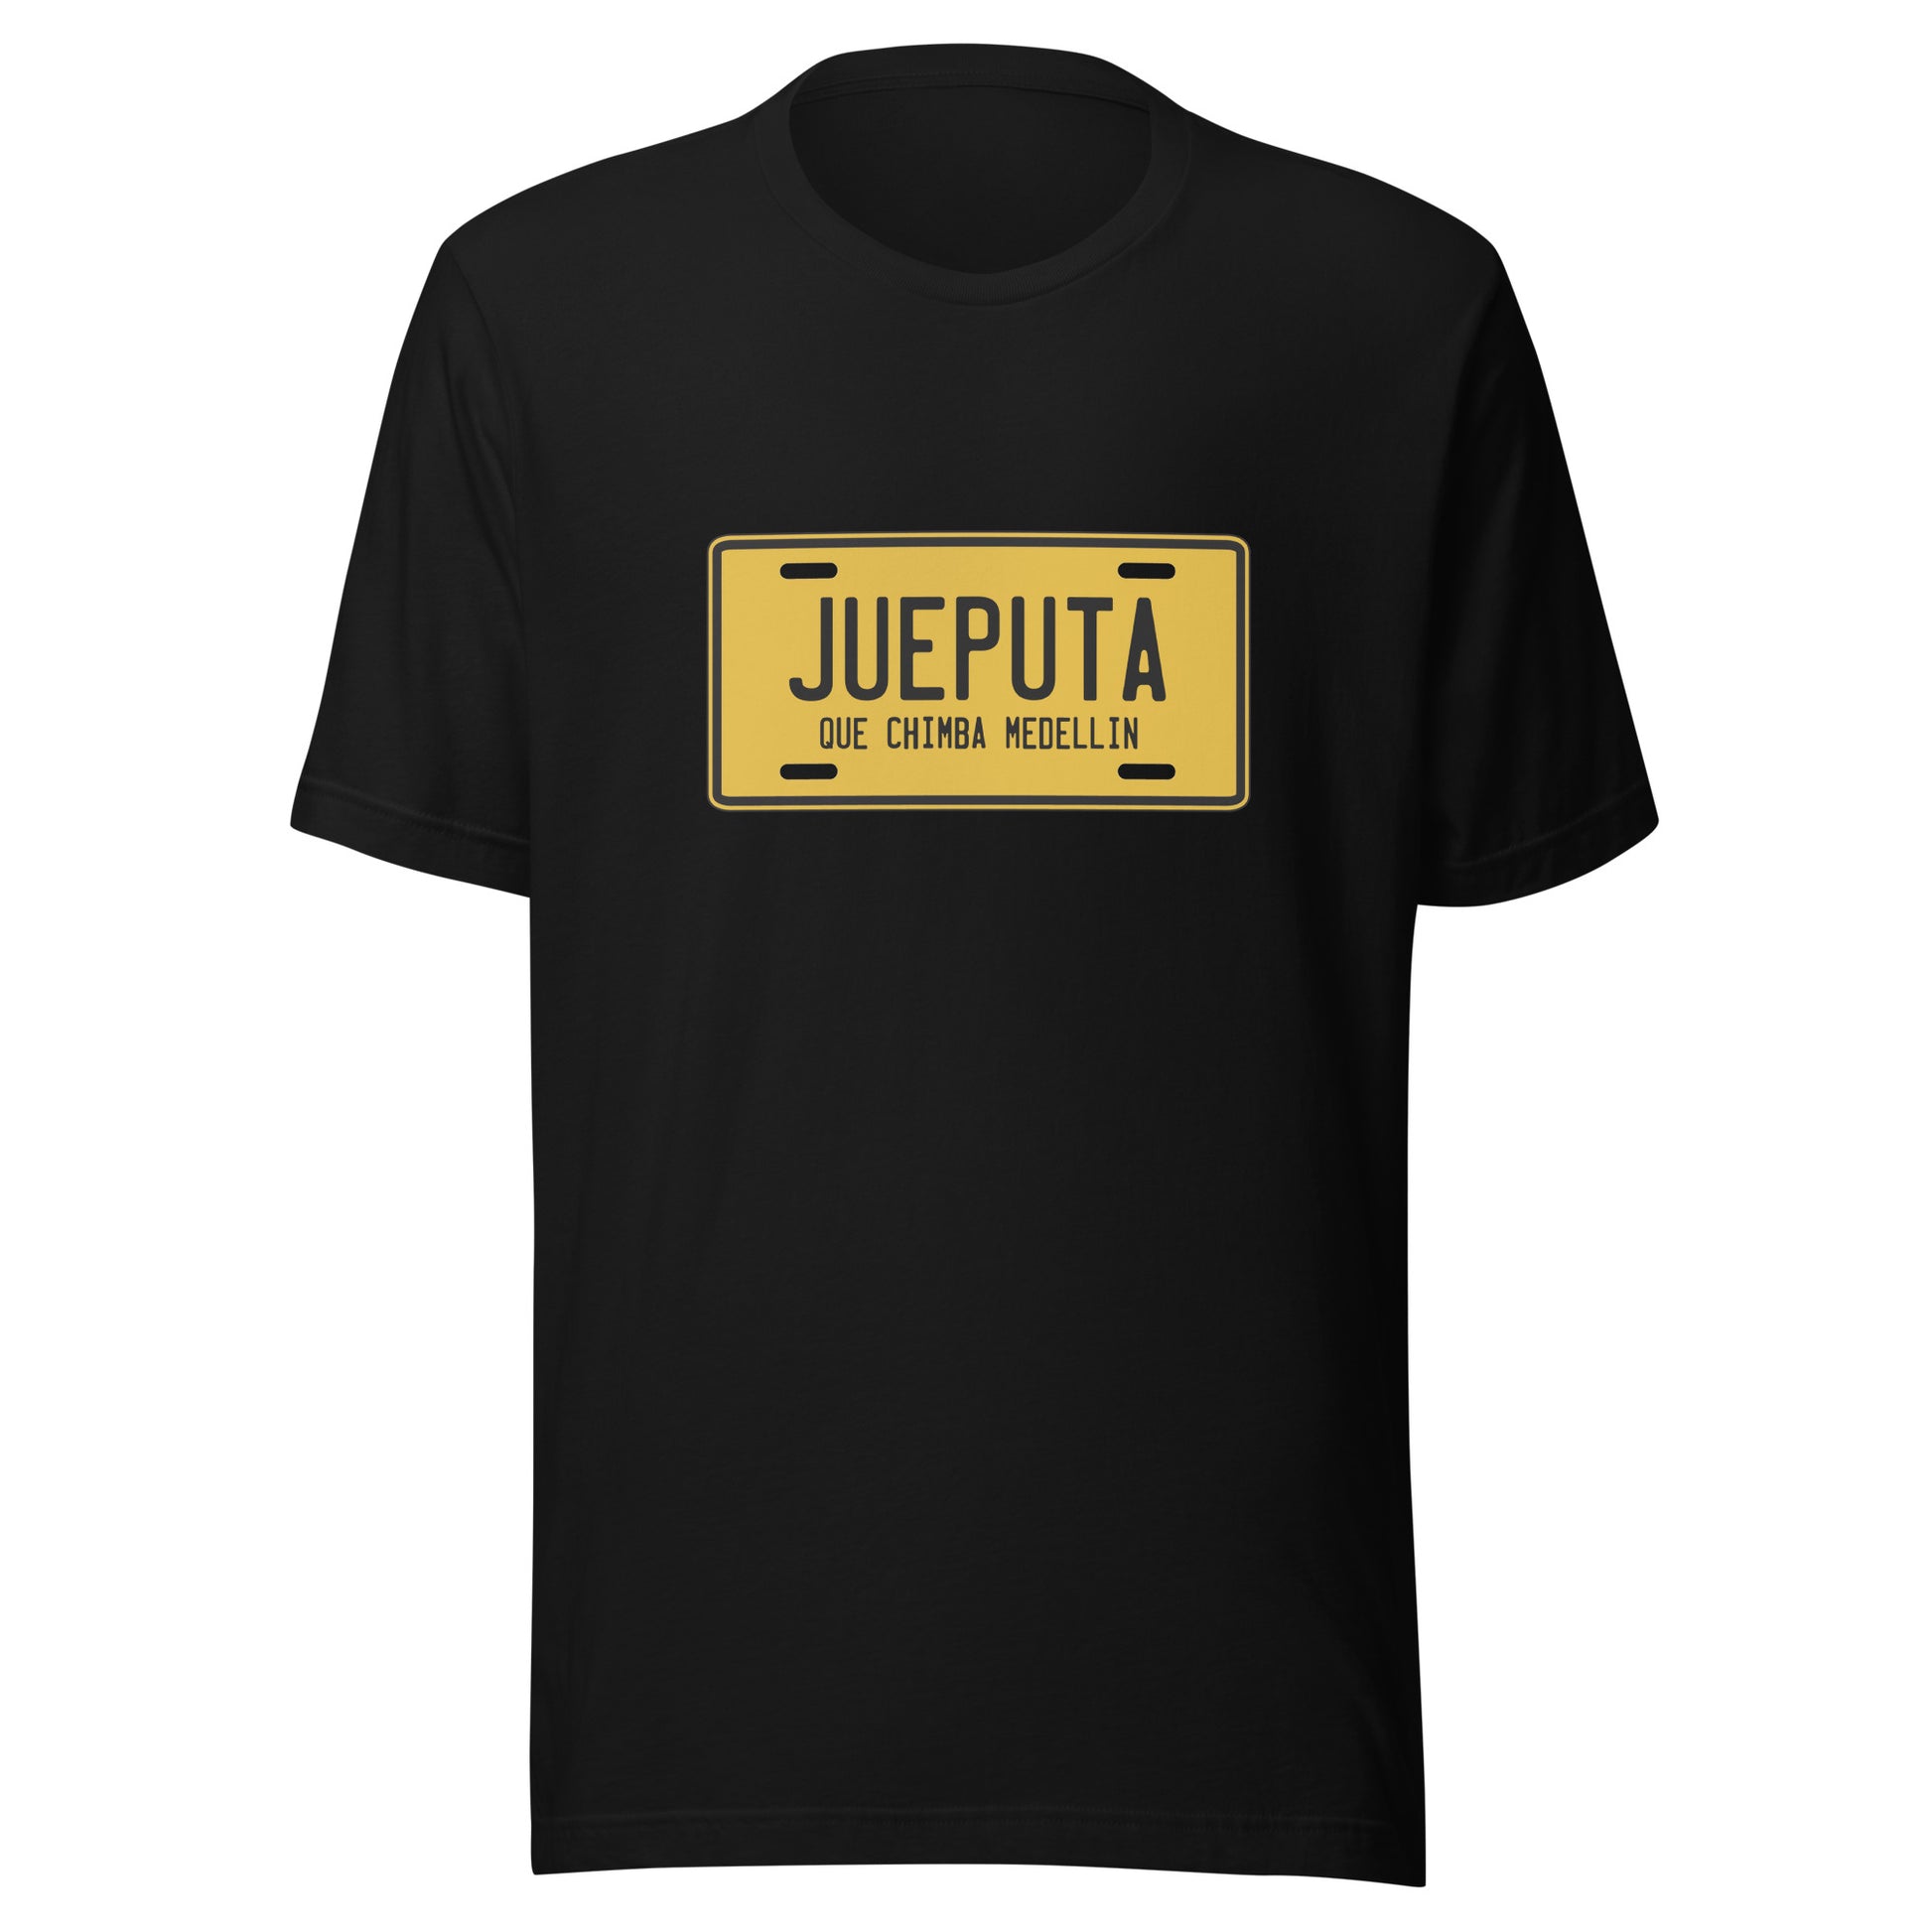 Muestra tu orgullo colombiano con la Camiseta Jueputa Que Chimba. Diseñada con los mejores materiales y un estampado duradero.